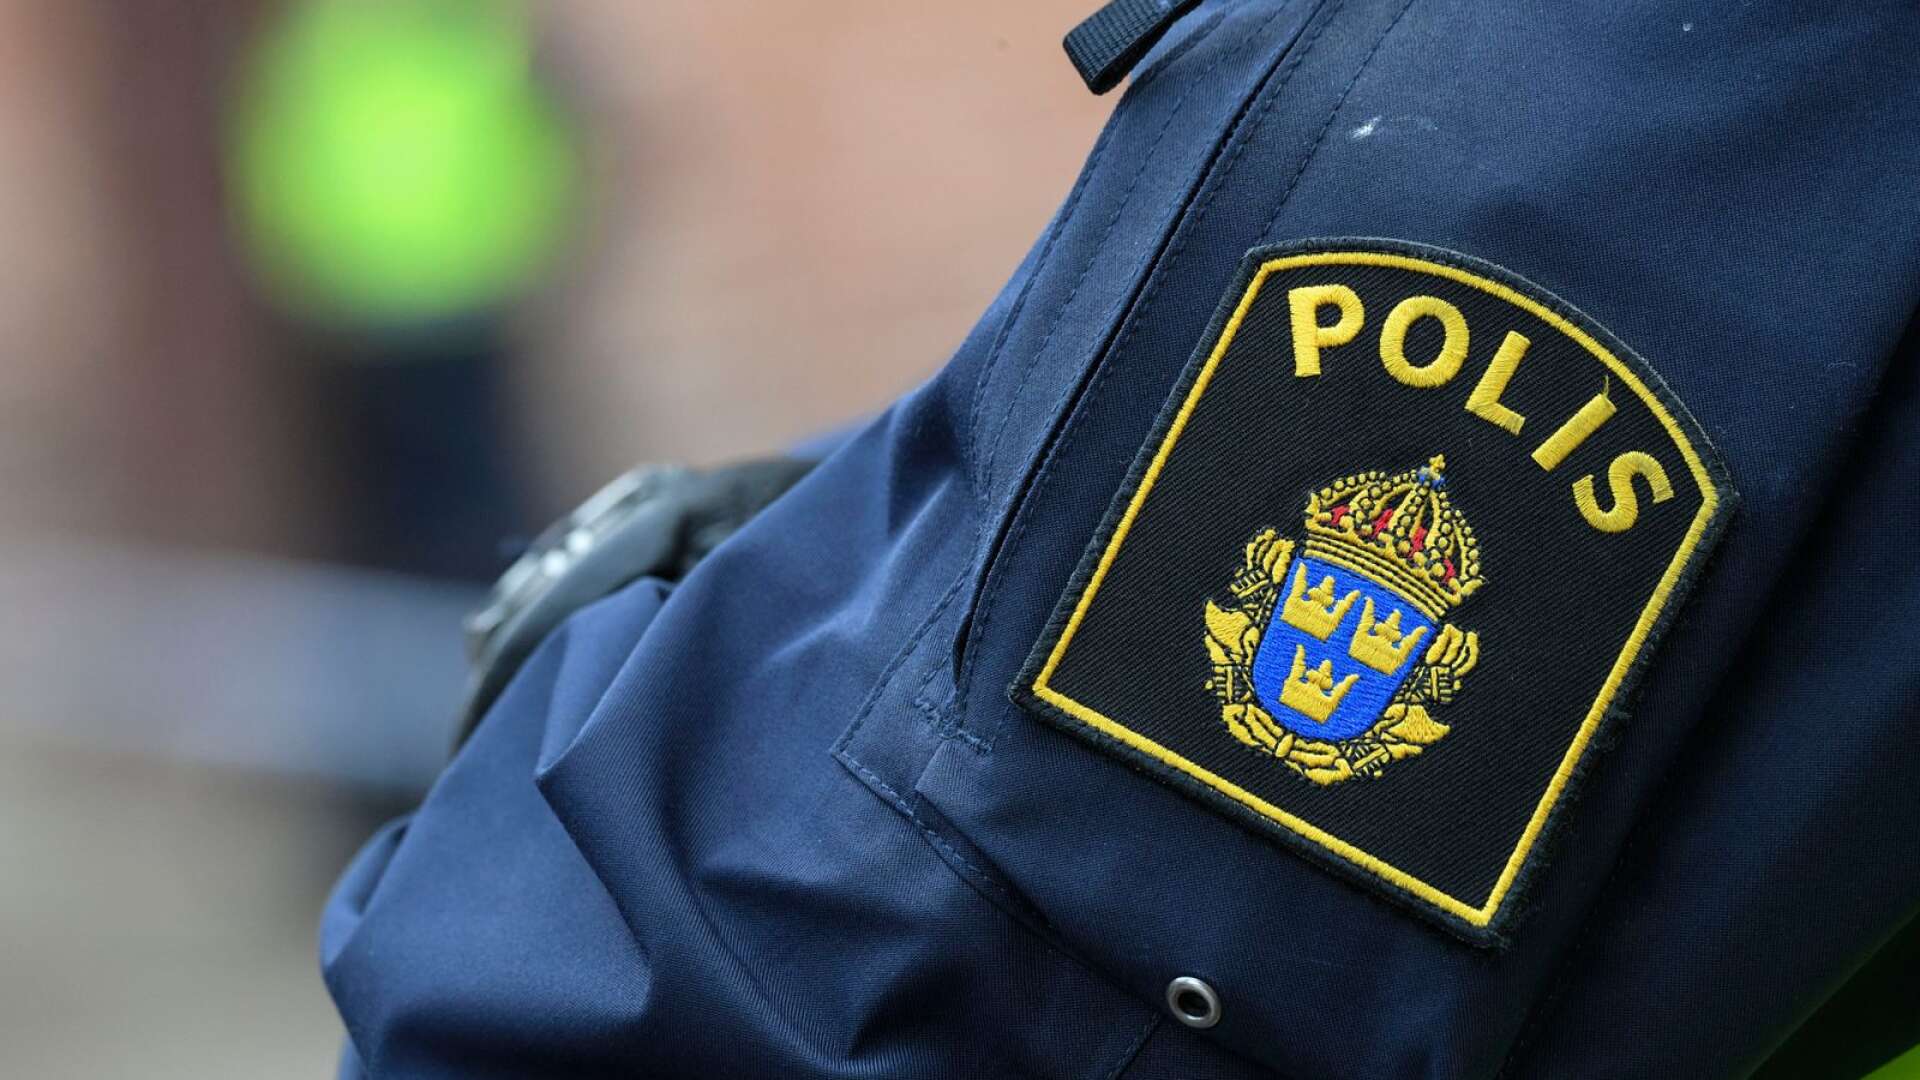 Enligt polisen i Värmland har endast ett fåtal personer frihetsberövats under helgen, trots en hel del fylla och bråk.